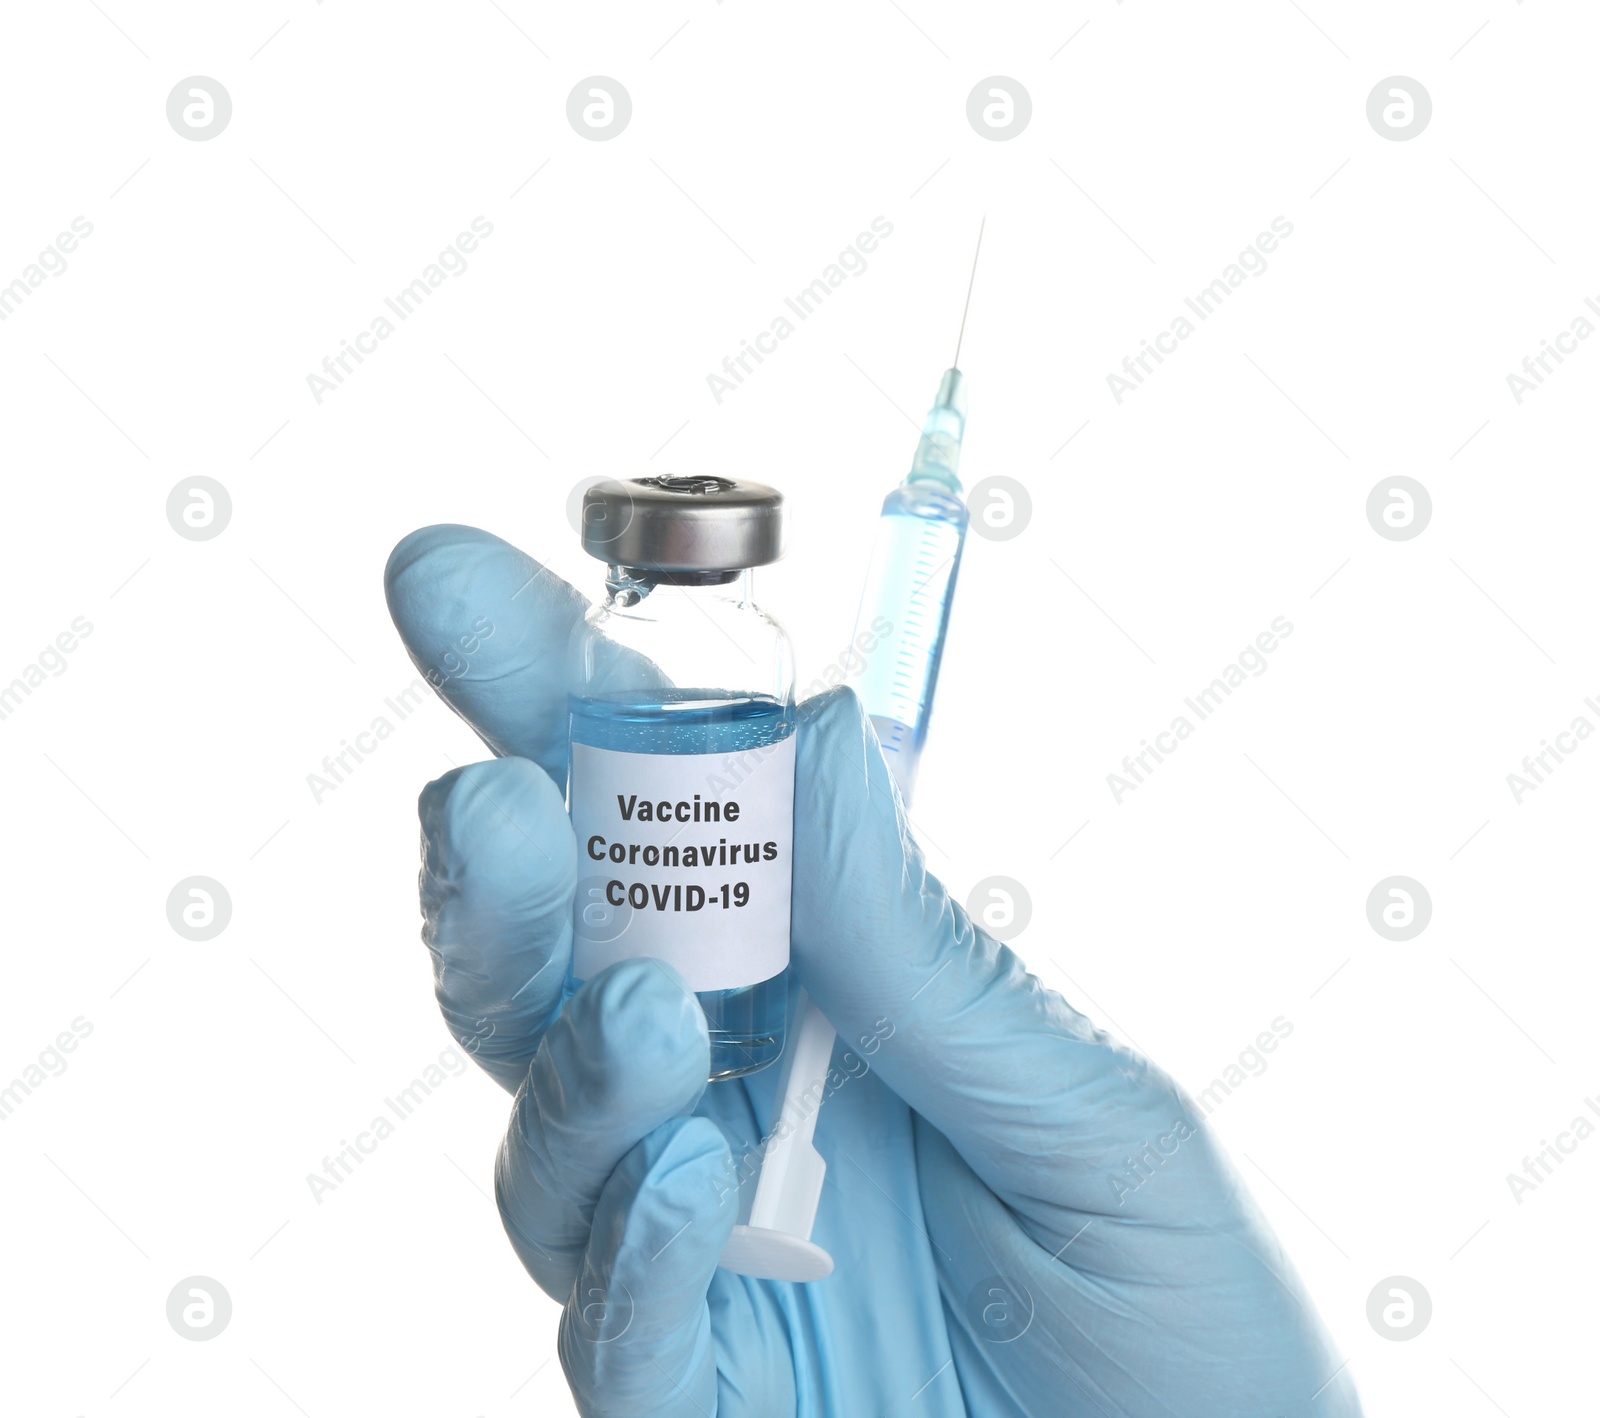 Image of Doctor holding coronavirus vaccine and syringe on white background, closeup